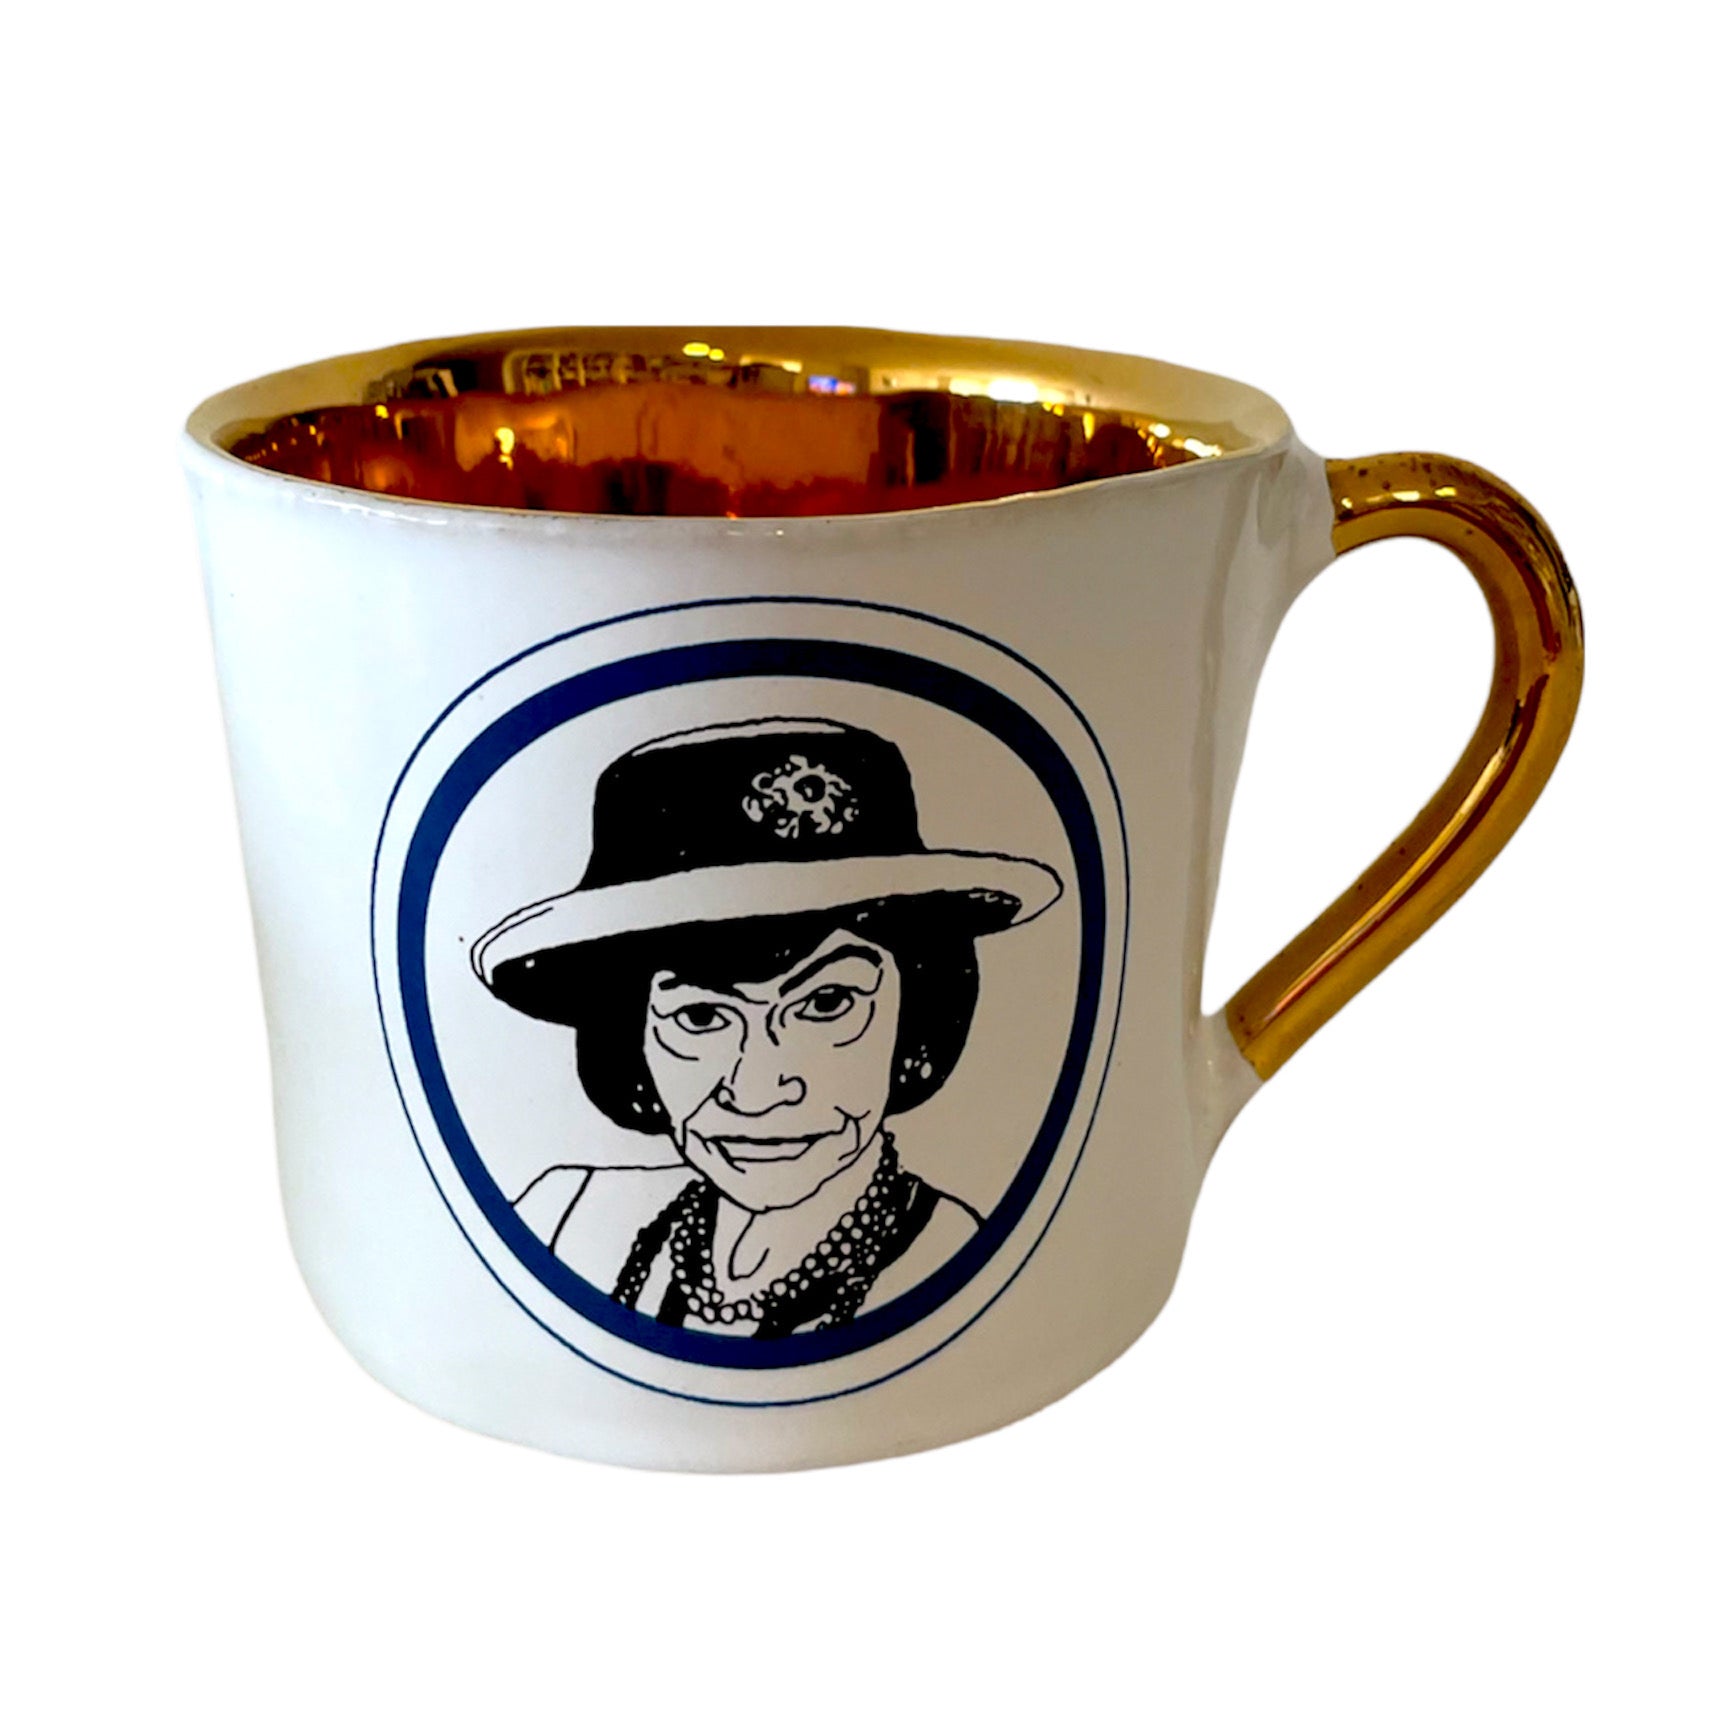 KUHN KERAMIK ALICE MEDIUM COFFEE CUP GLAM DELUXE - Coco Chanel